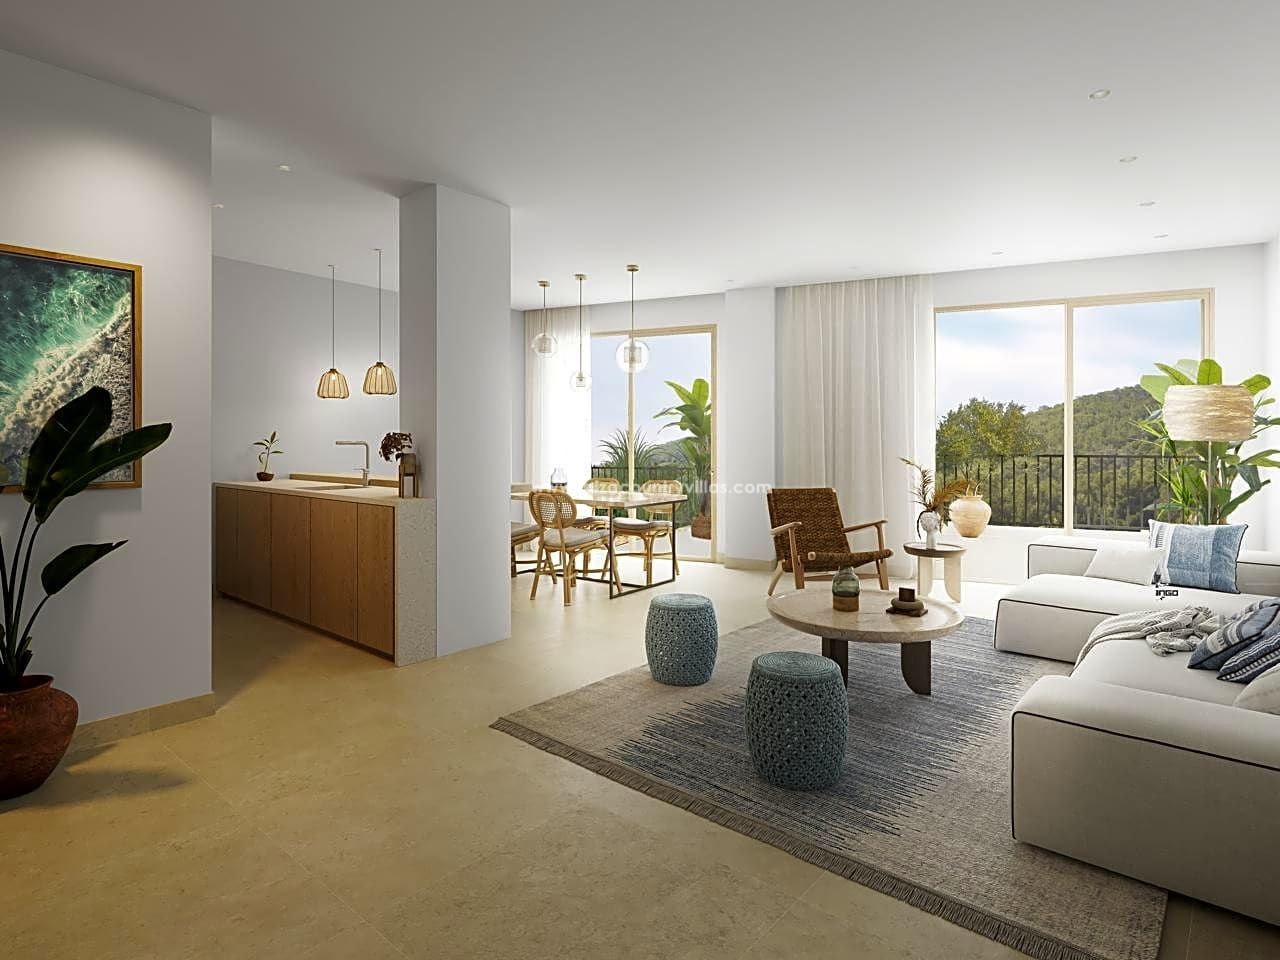 Nuevos y exclusivos apartamentos de 3 dormitorios en Santa Eulalia